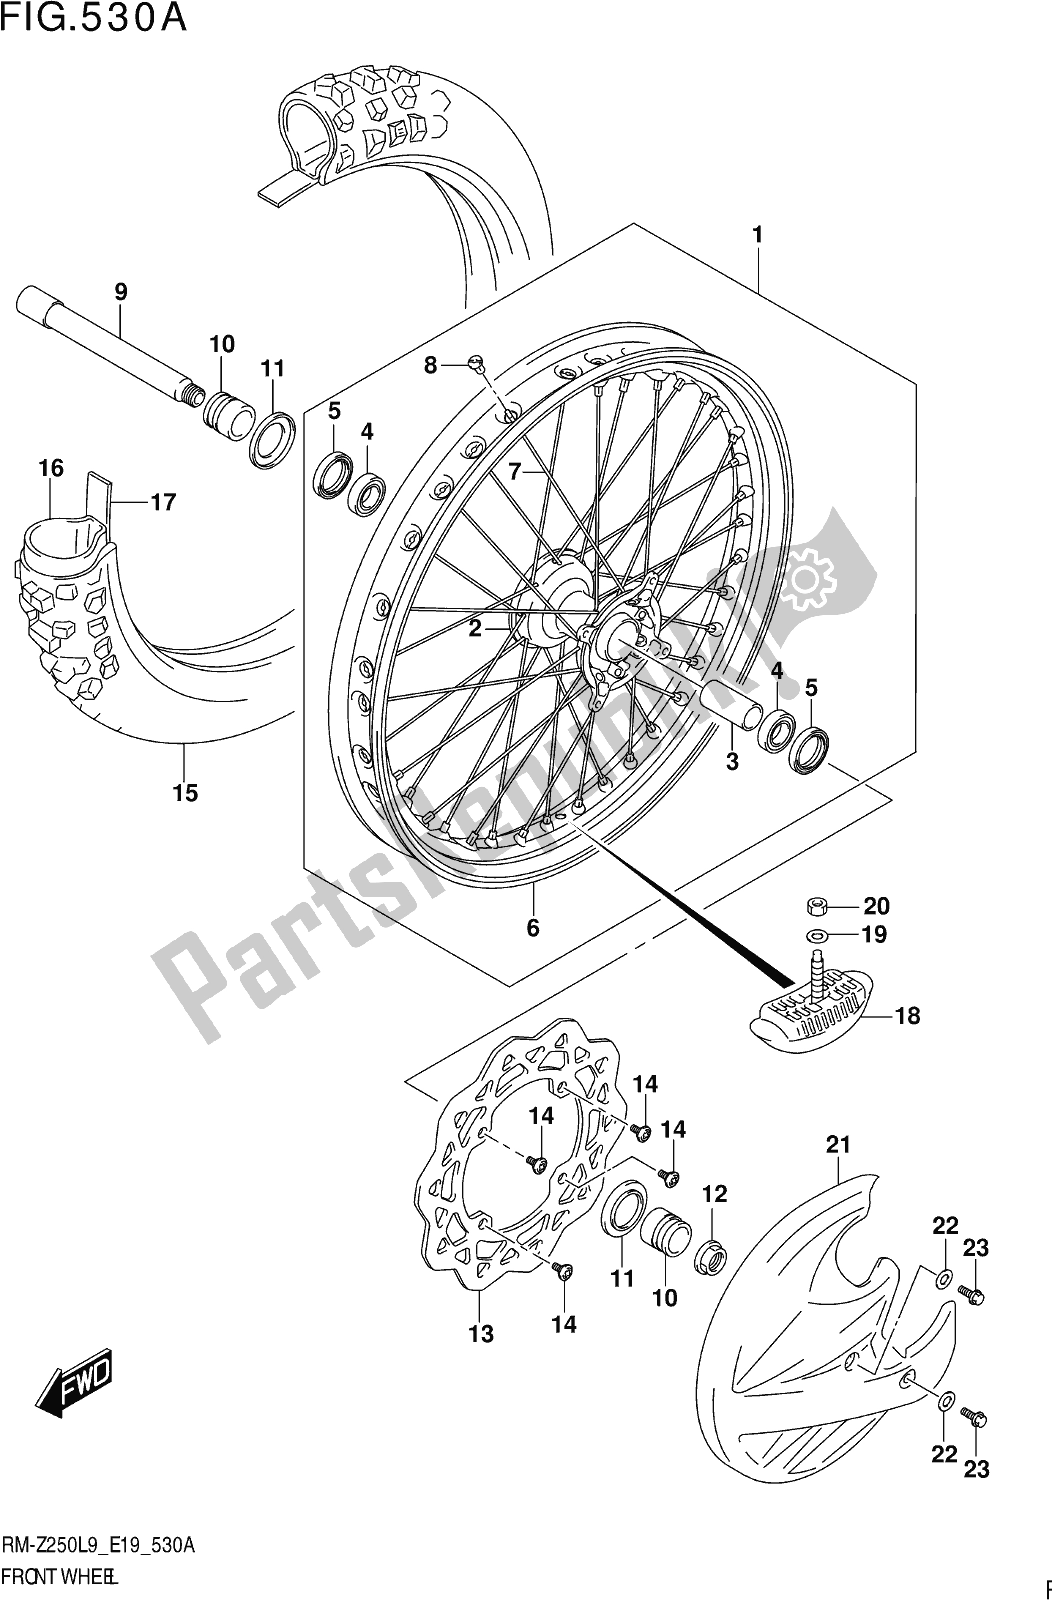 Alle onderdelen voor de Fig. 530a Front Wheel van de Suzuki RM-Z 250 2019